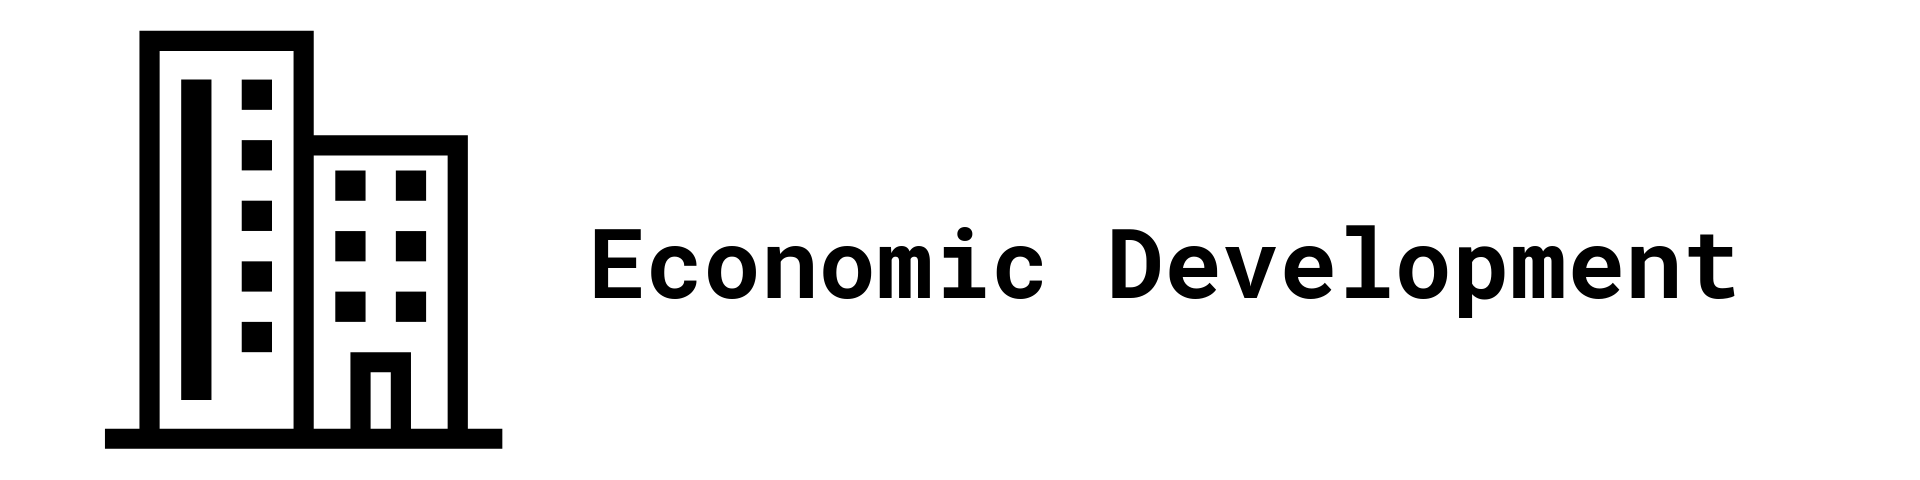 Economic Development Graphic